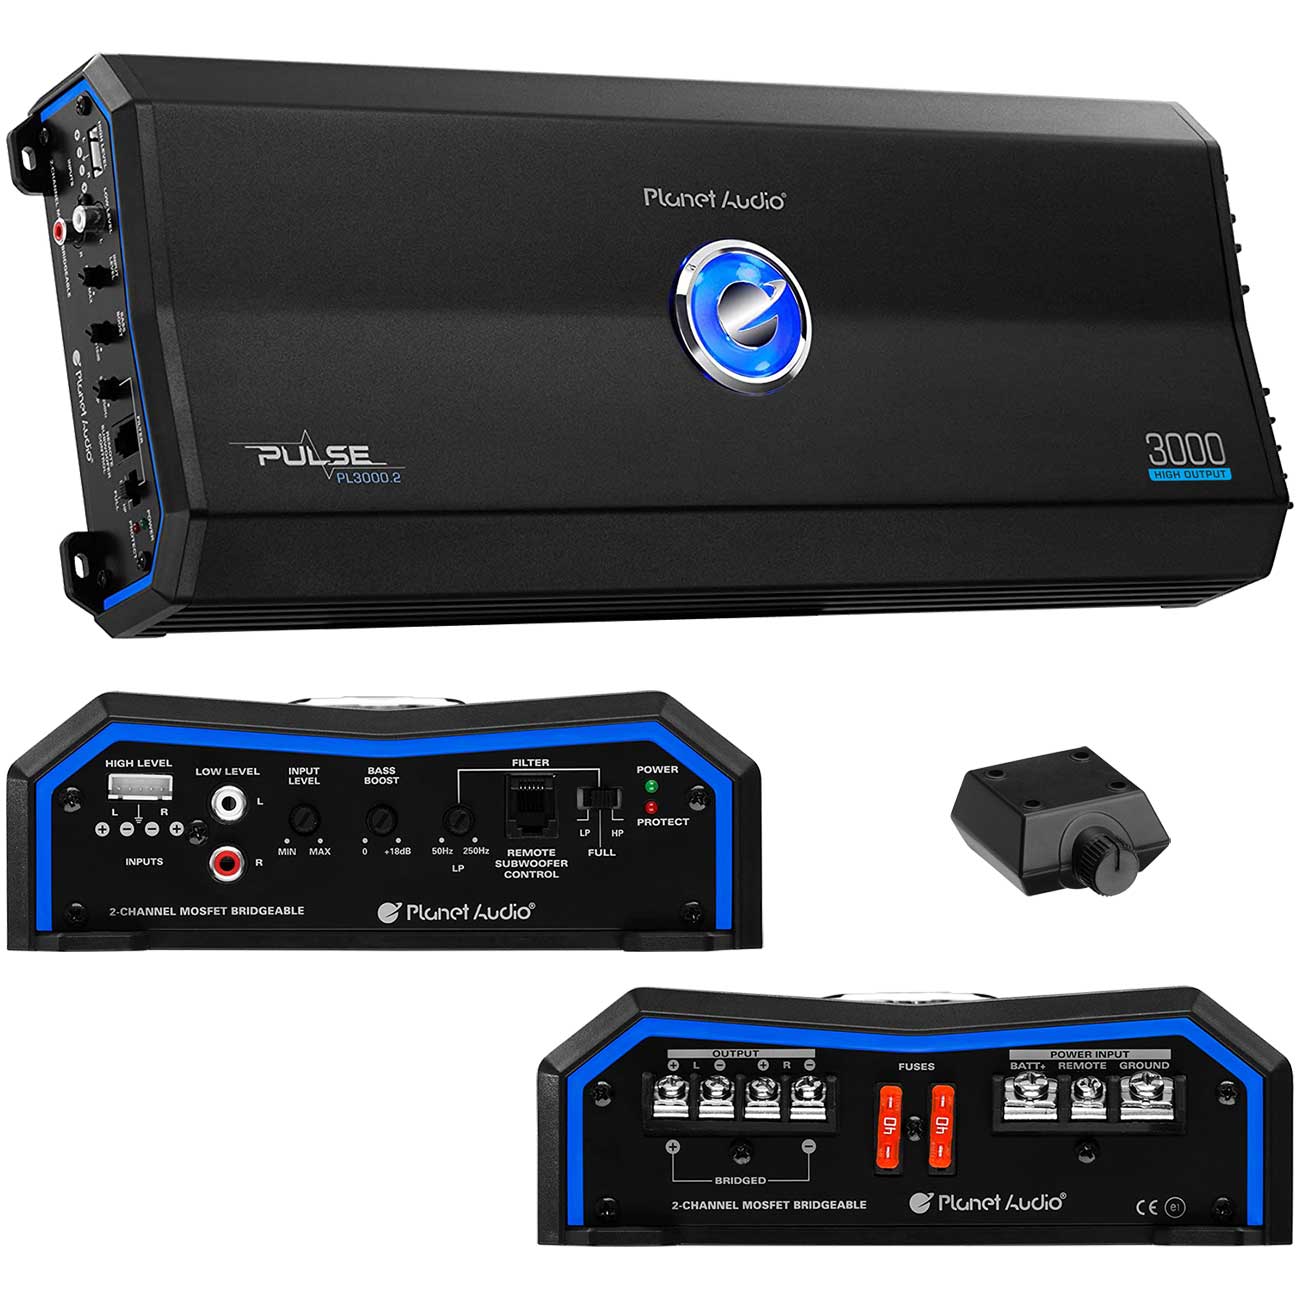 Planet Audio PL30002 Pulse Series Car Audio Amplifier